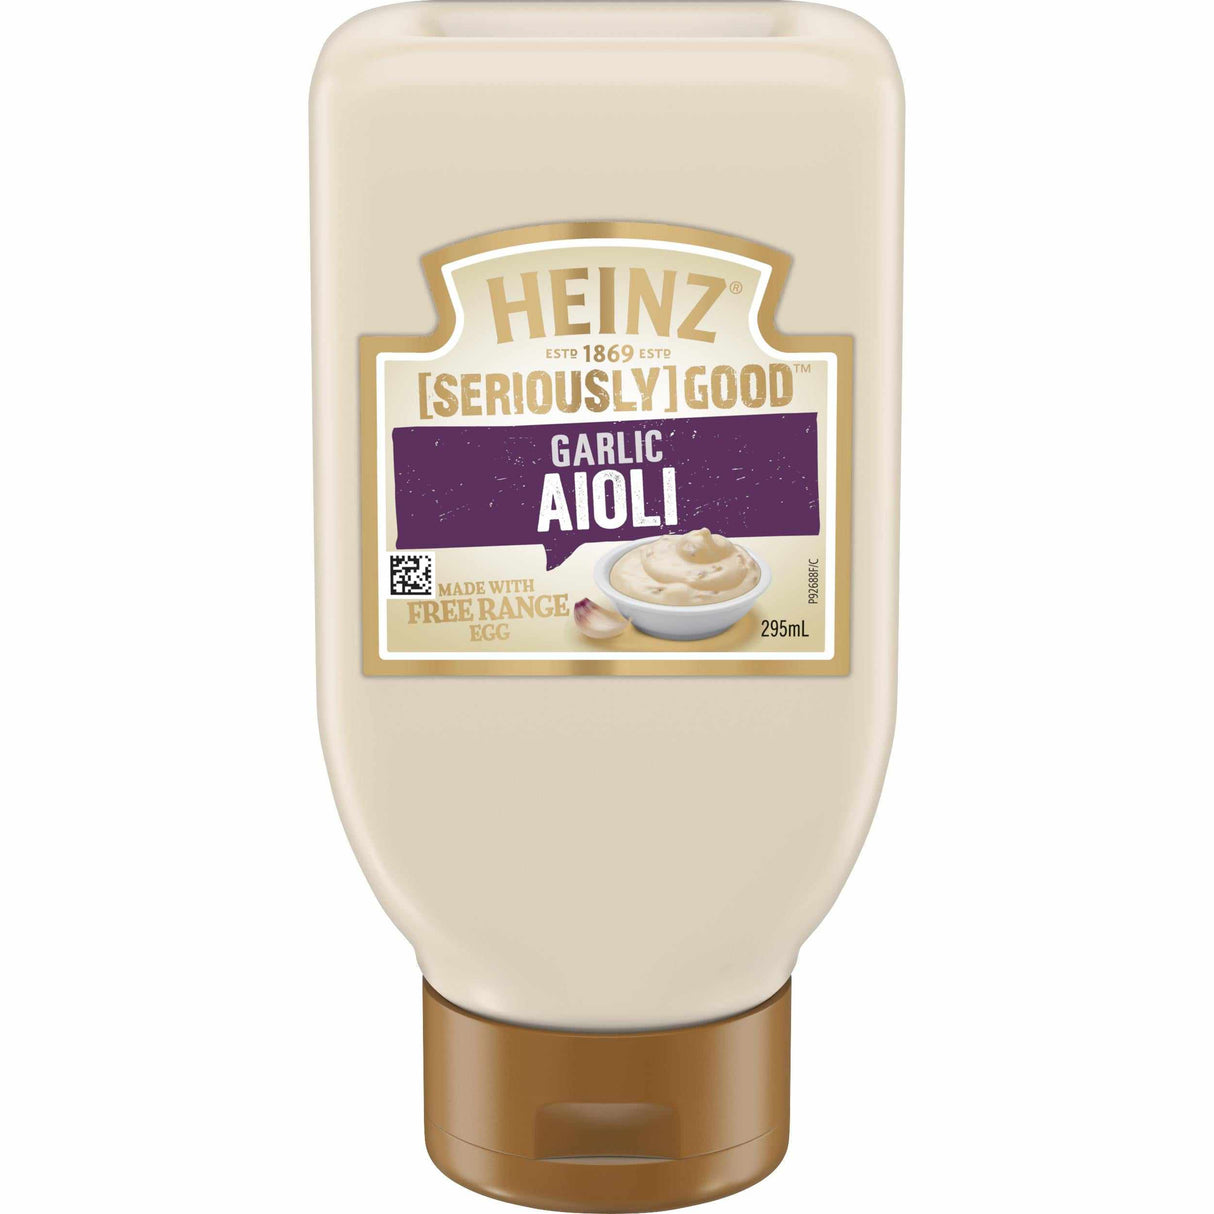 Heinz [SERIOUSLY] GOOD Garlic Aioli 295ml